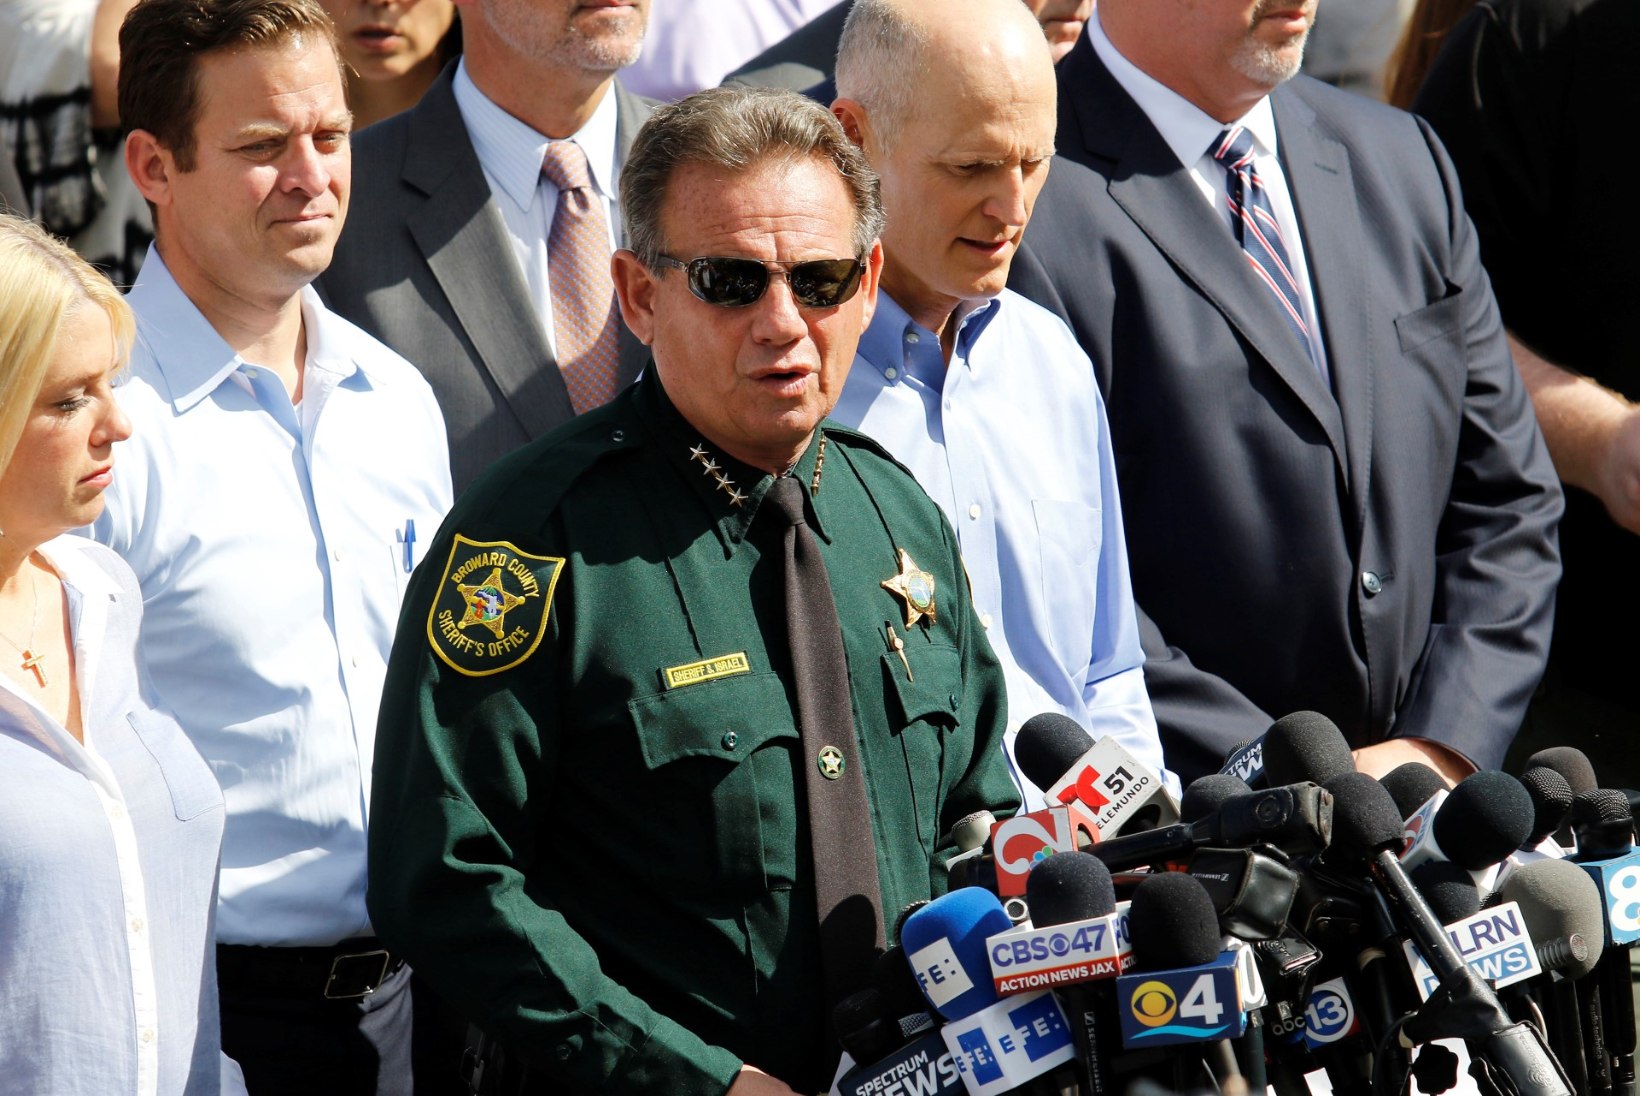 Florida keskkooli valvanud politseinik ei sisenenud tulistamise ajal kordagi koolimajja